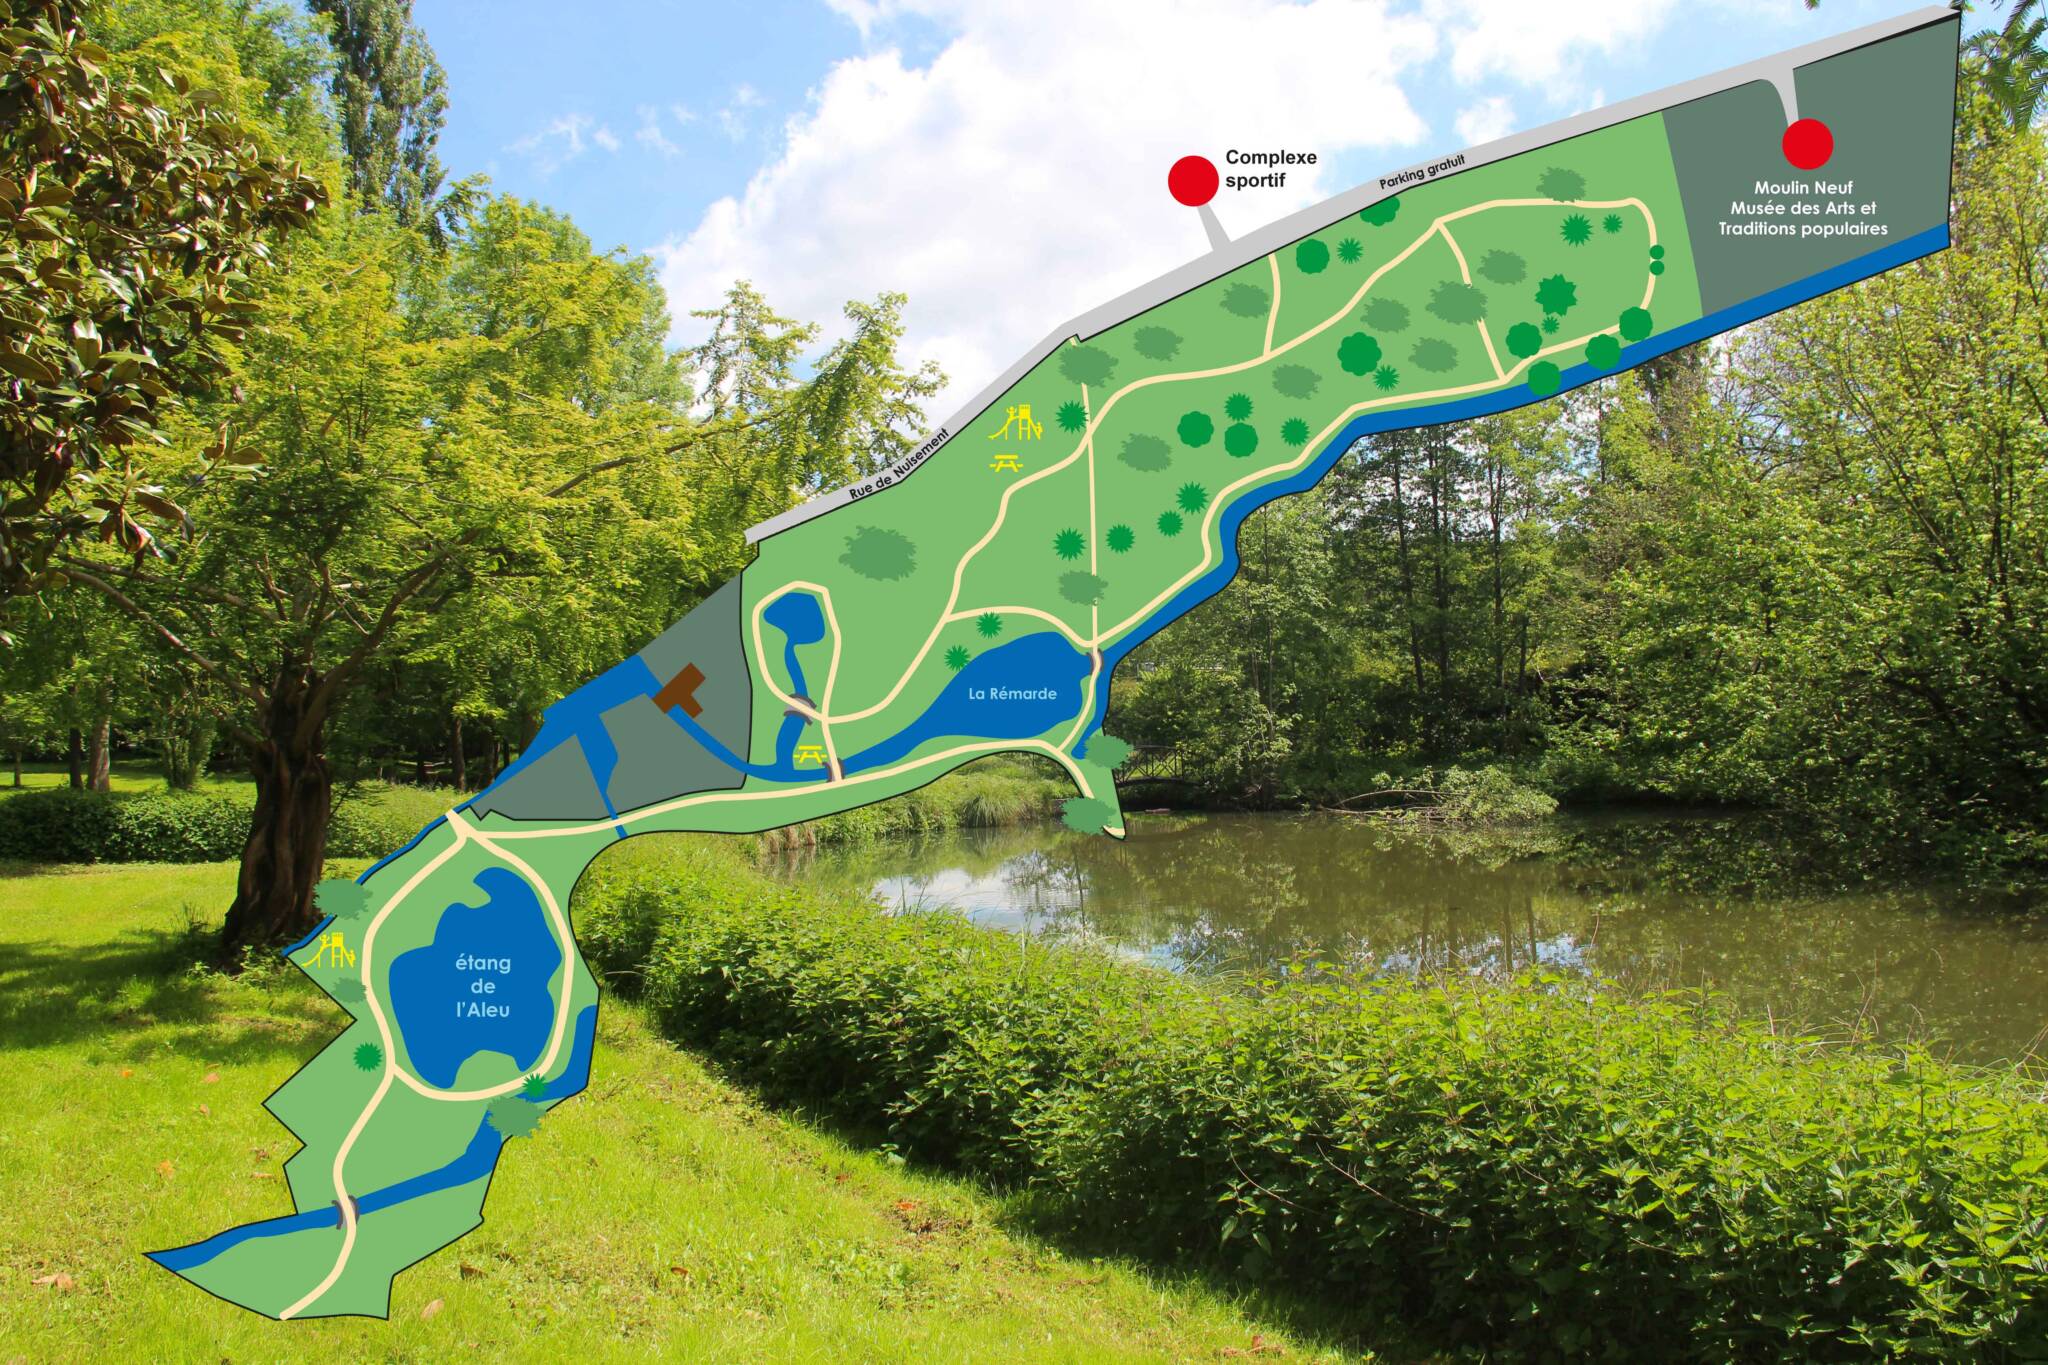 Plan Parc de lAleu scaled - Office de Tourisme de Rambouillet